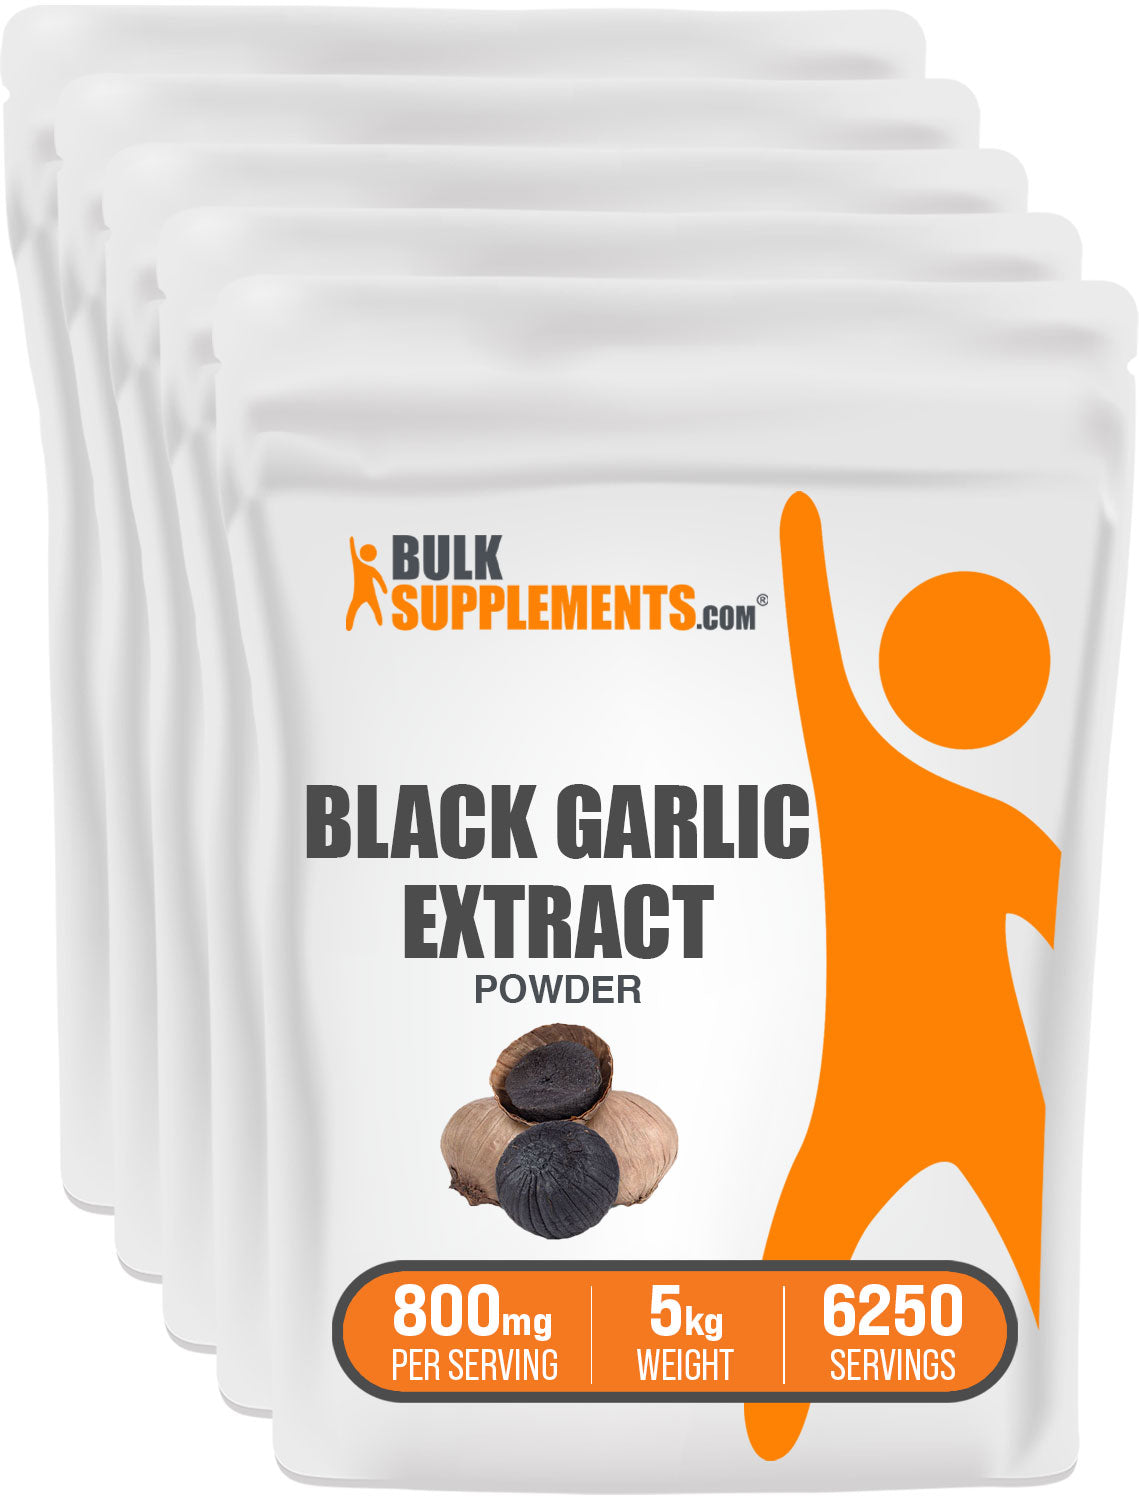 5kg black garlic supplements